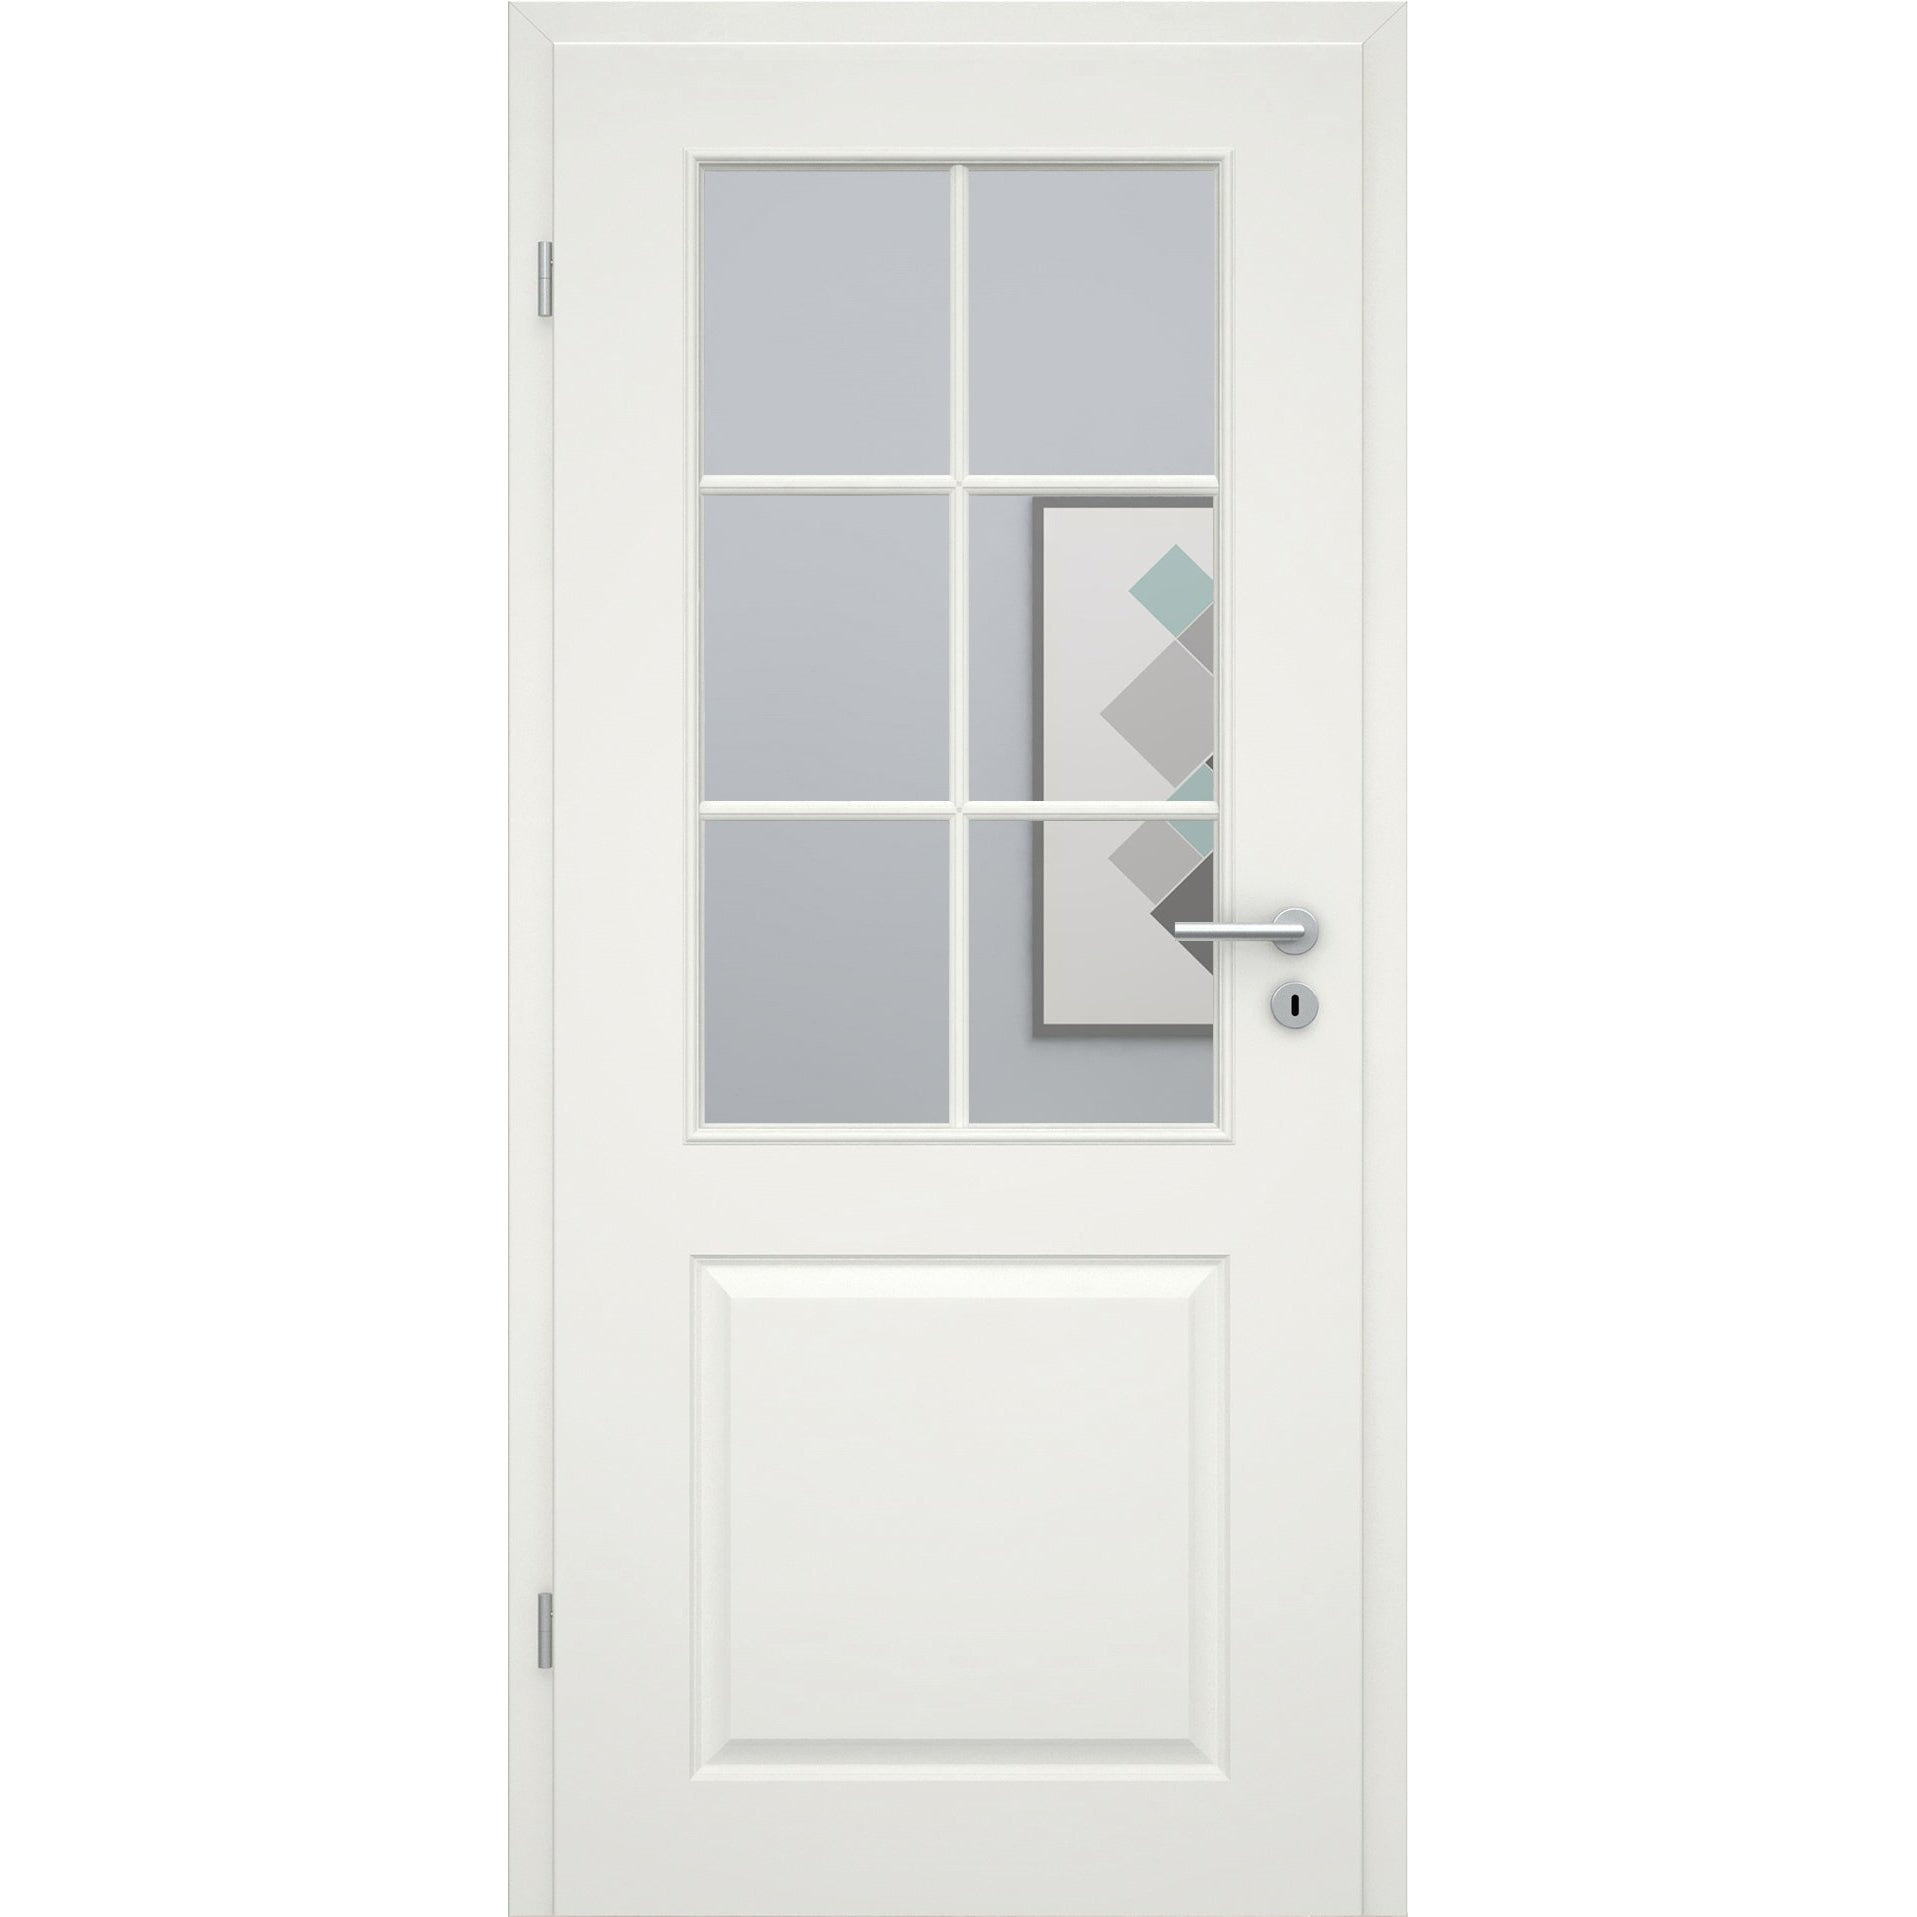 Zimmertür mit Lichtausschnitt mit Sprossenrahmen standard soft-weiß 2 Kassetten Rundkante - Modell Stiltür K21LASPS